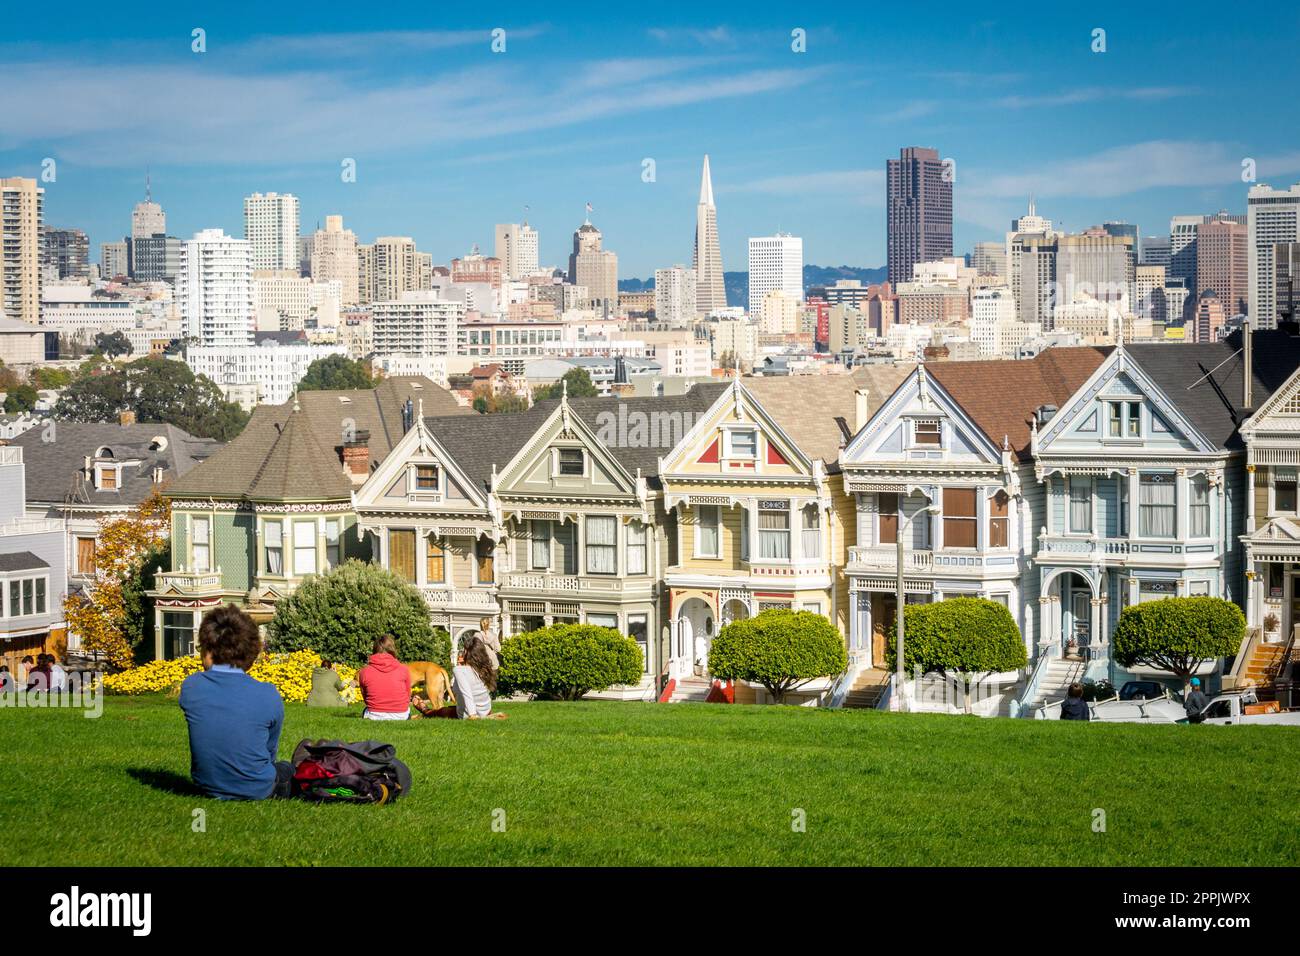 Vista en las casas victorianas pintadas de las damas de San Francisco con paisaje urbano y horizonte en el fondo en un cielo azul. Gente sentada delante Foto de stock